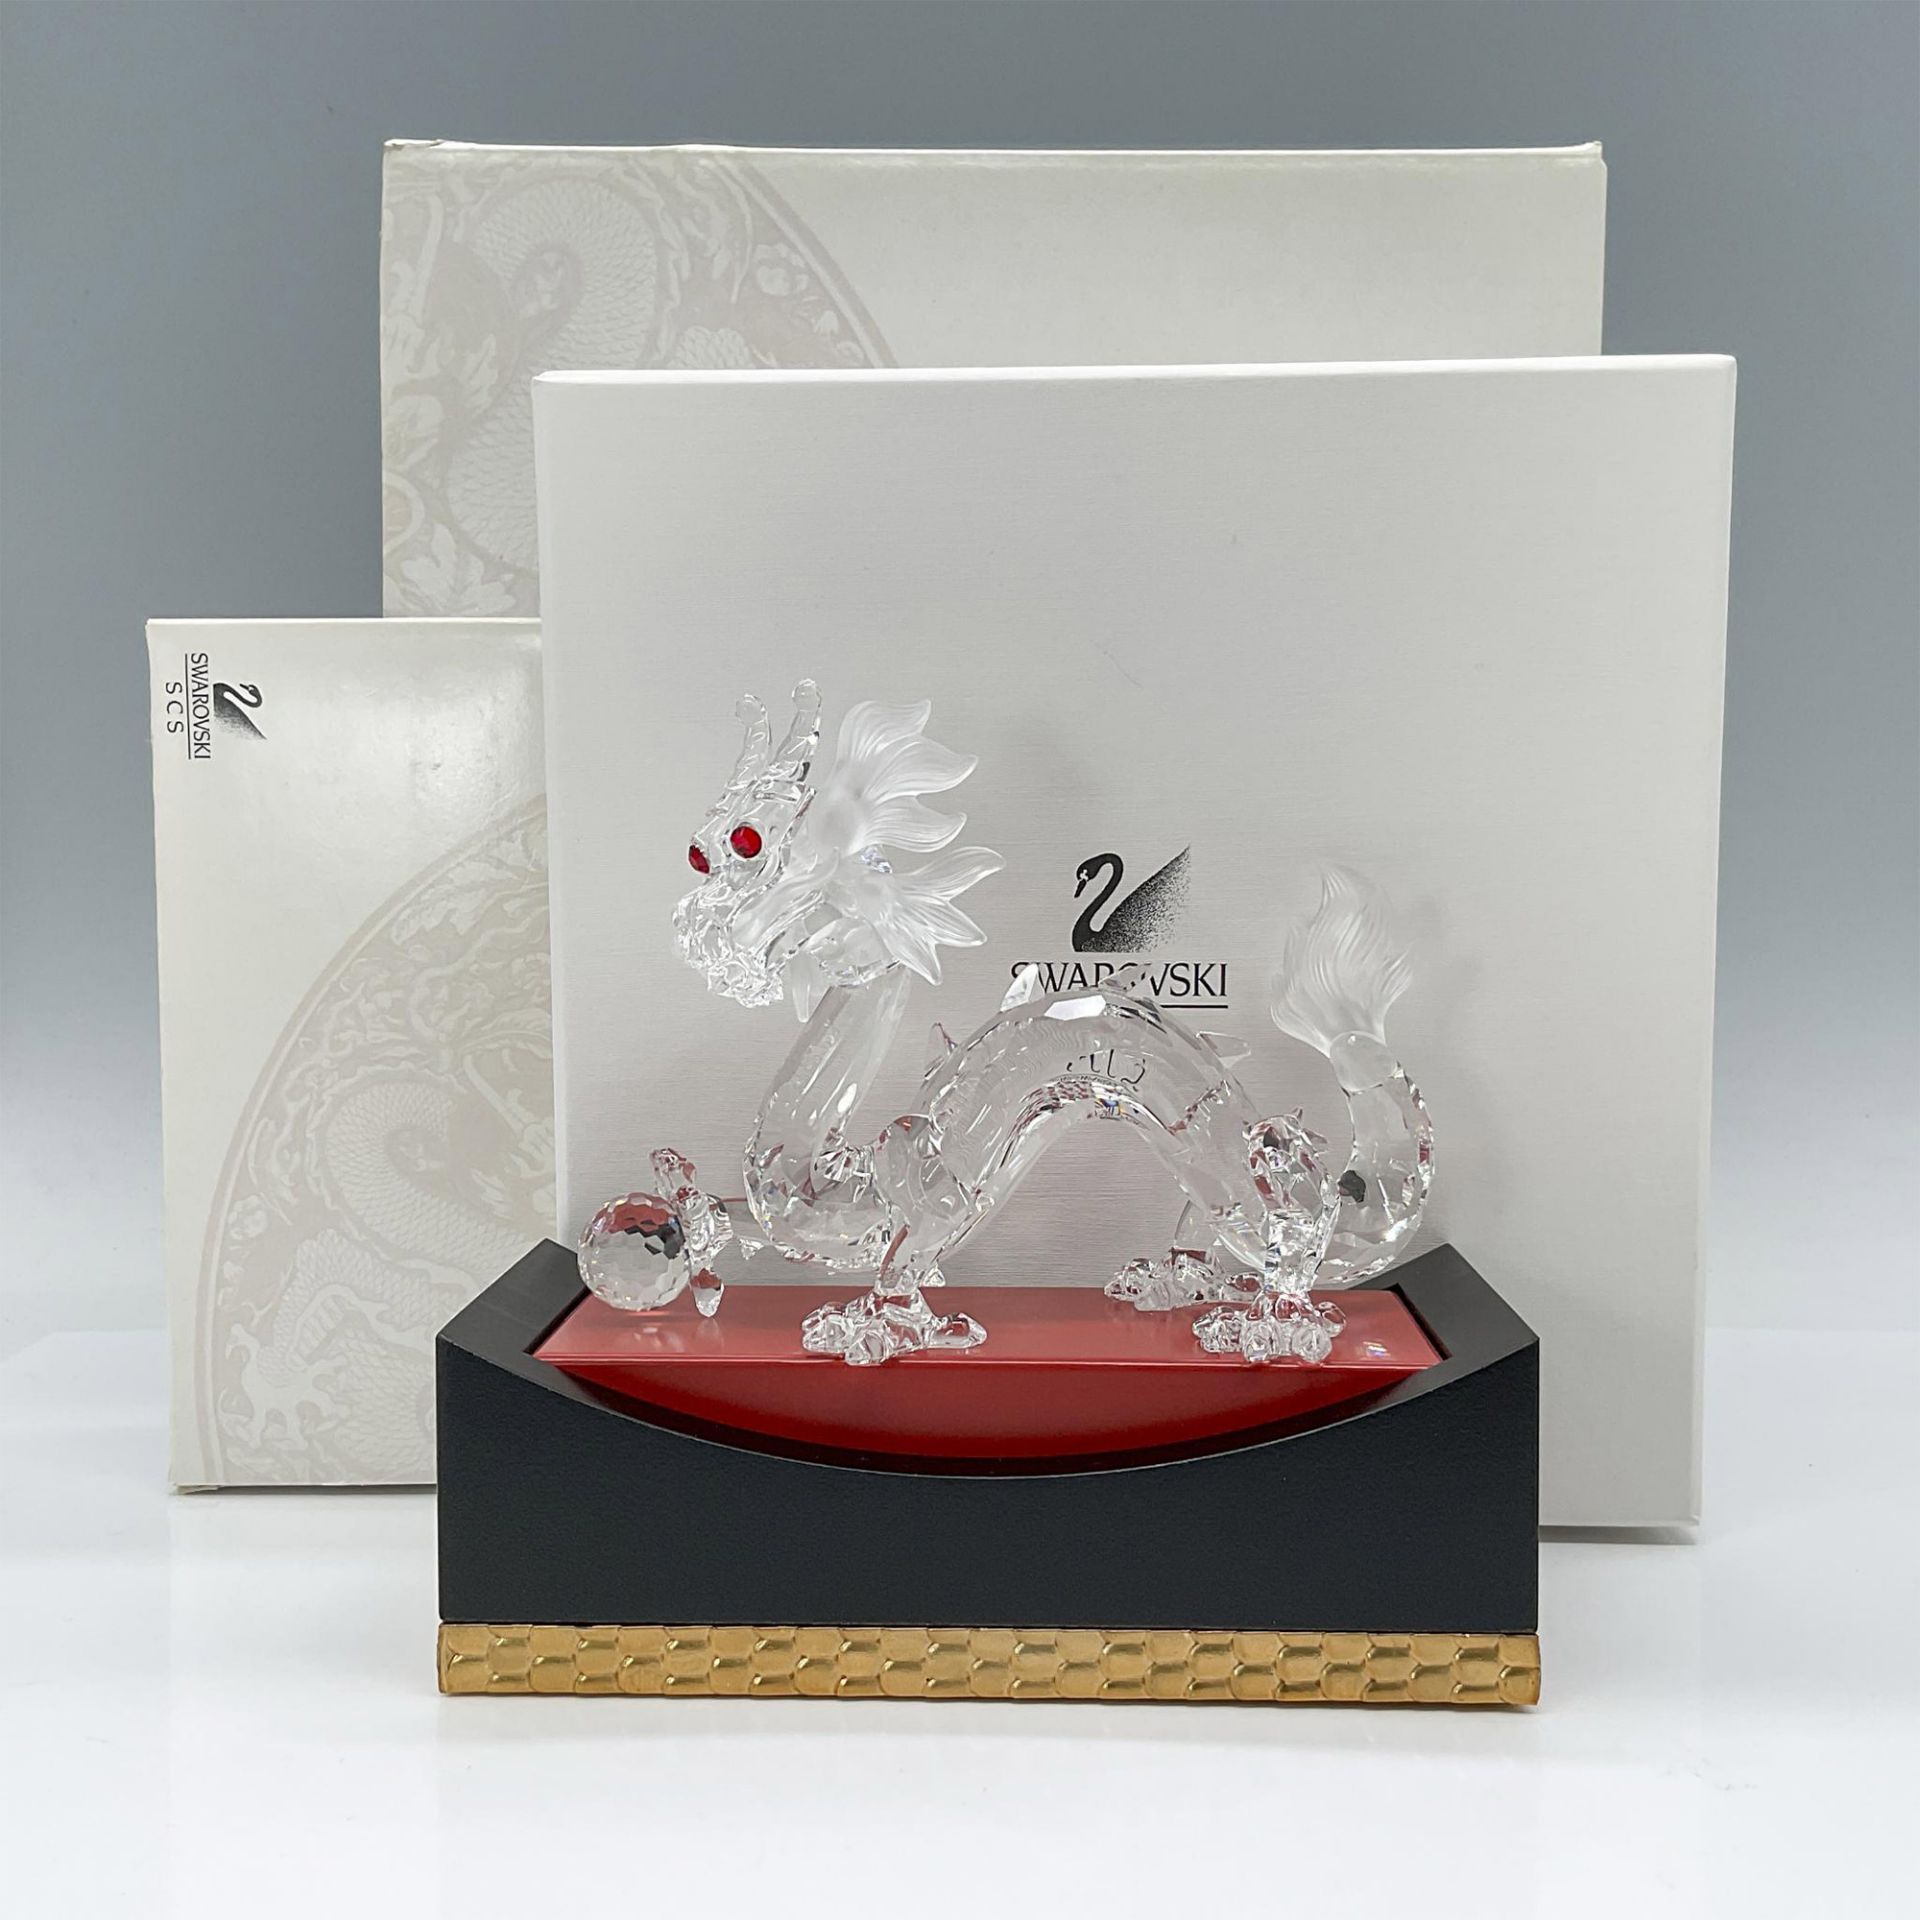 Swarovski Crystal Figurine, Zodiac Dragon with Base - Image 4 of 4